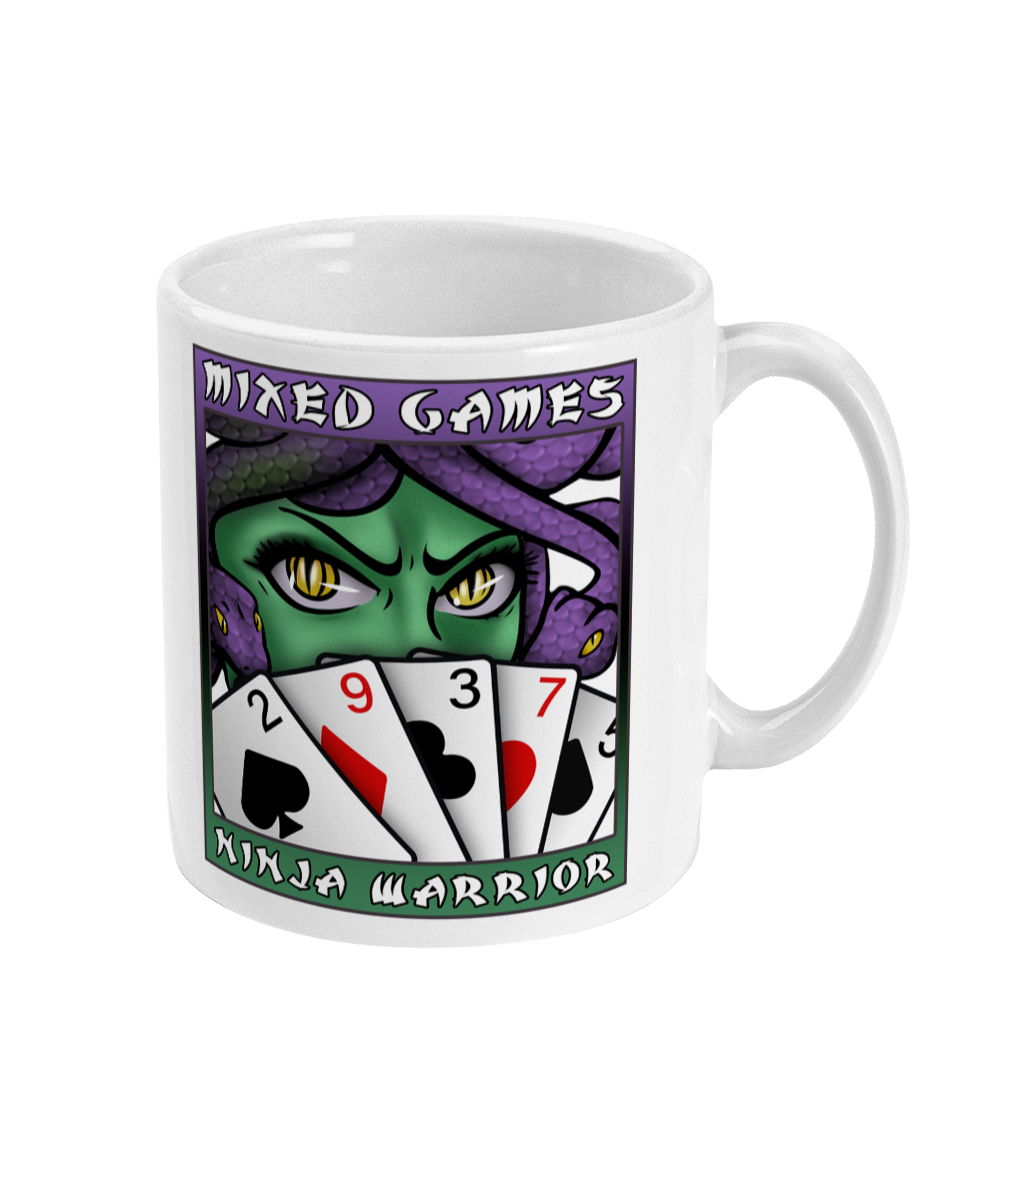 Mixed Games Ninja Warrior Mug